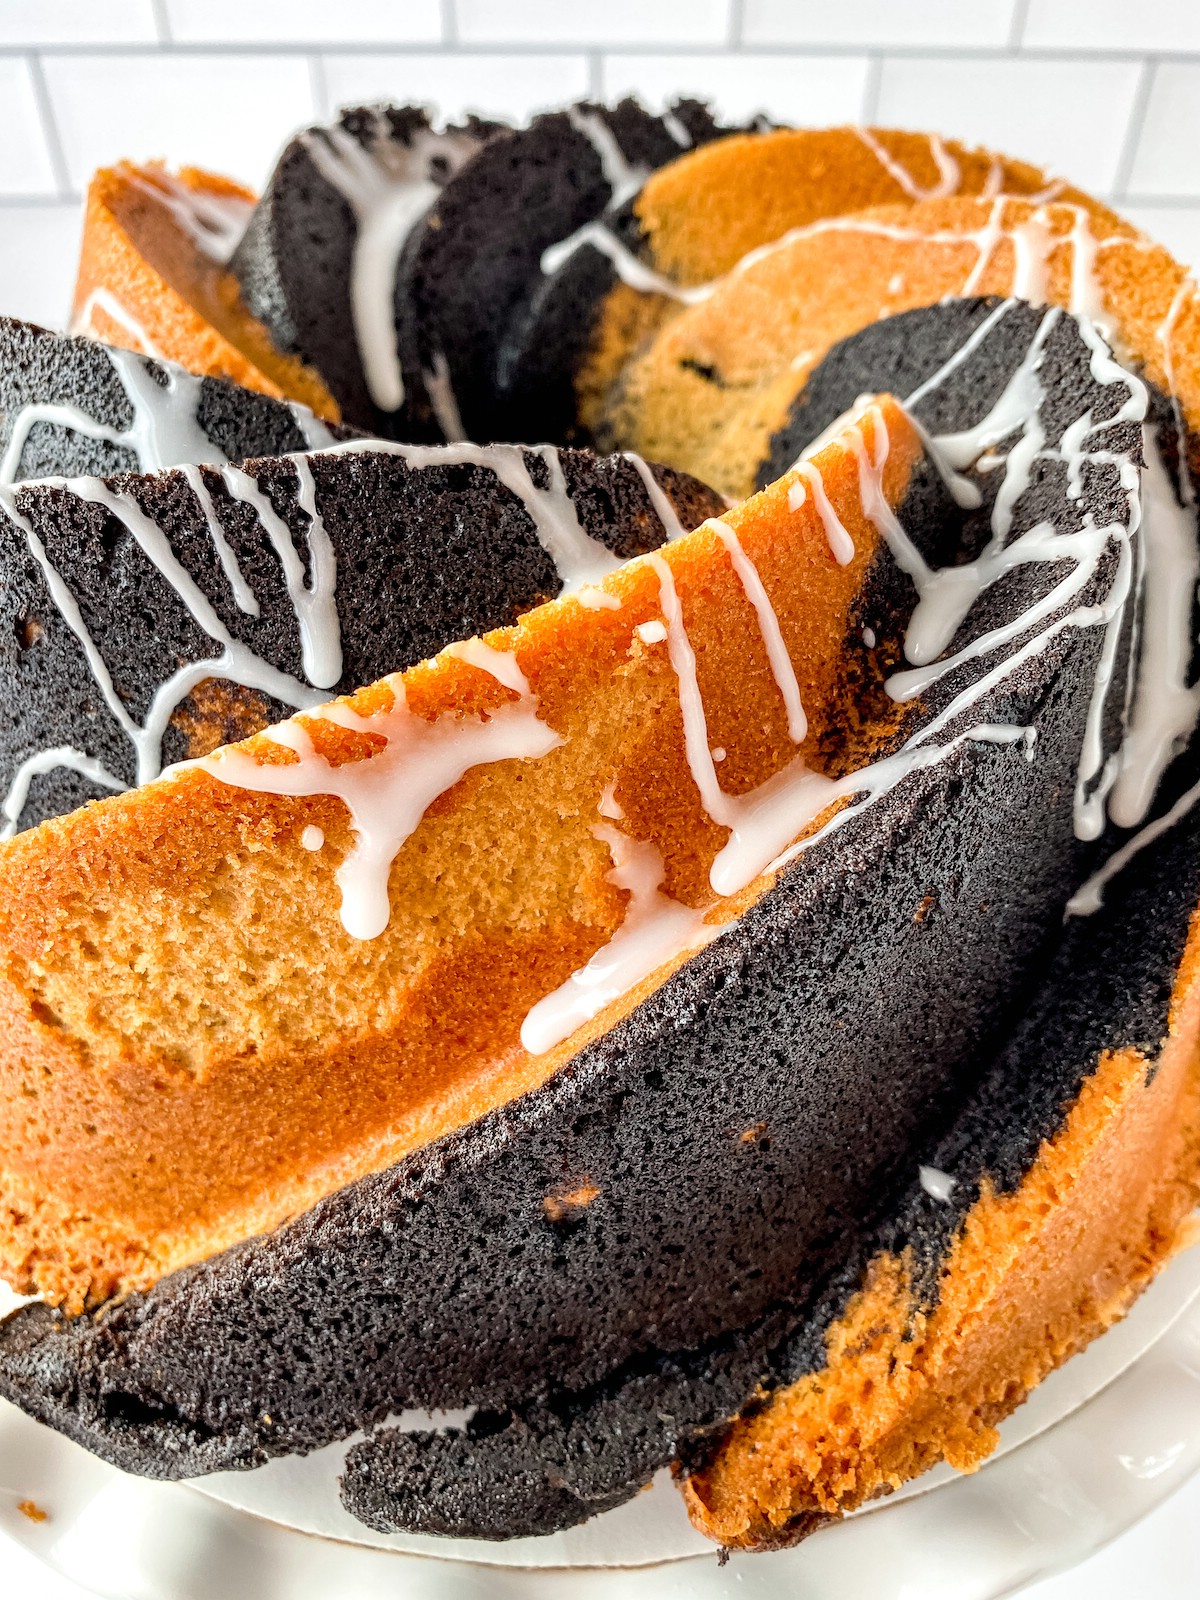 Glazed vanilla chocolate swirl bundt cake on stand